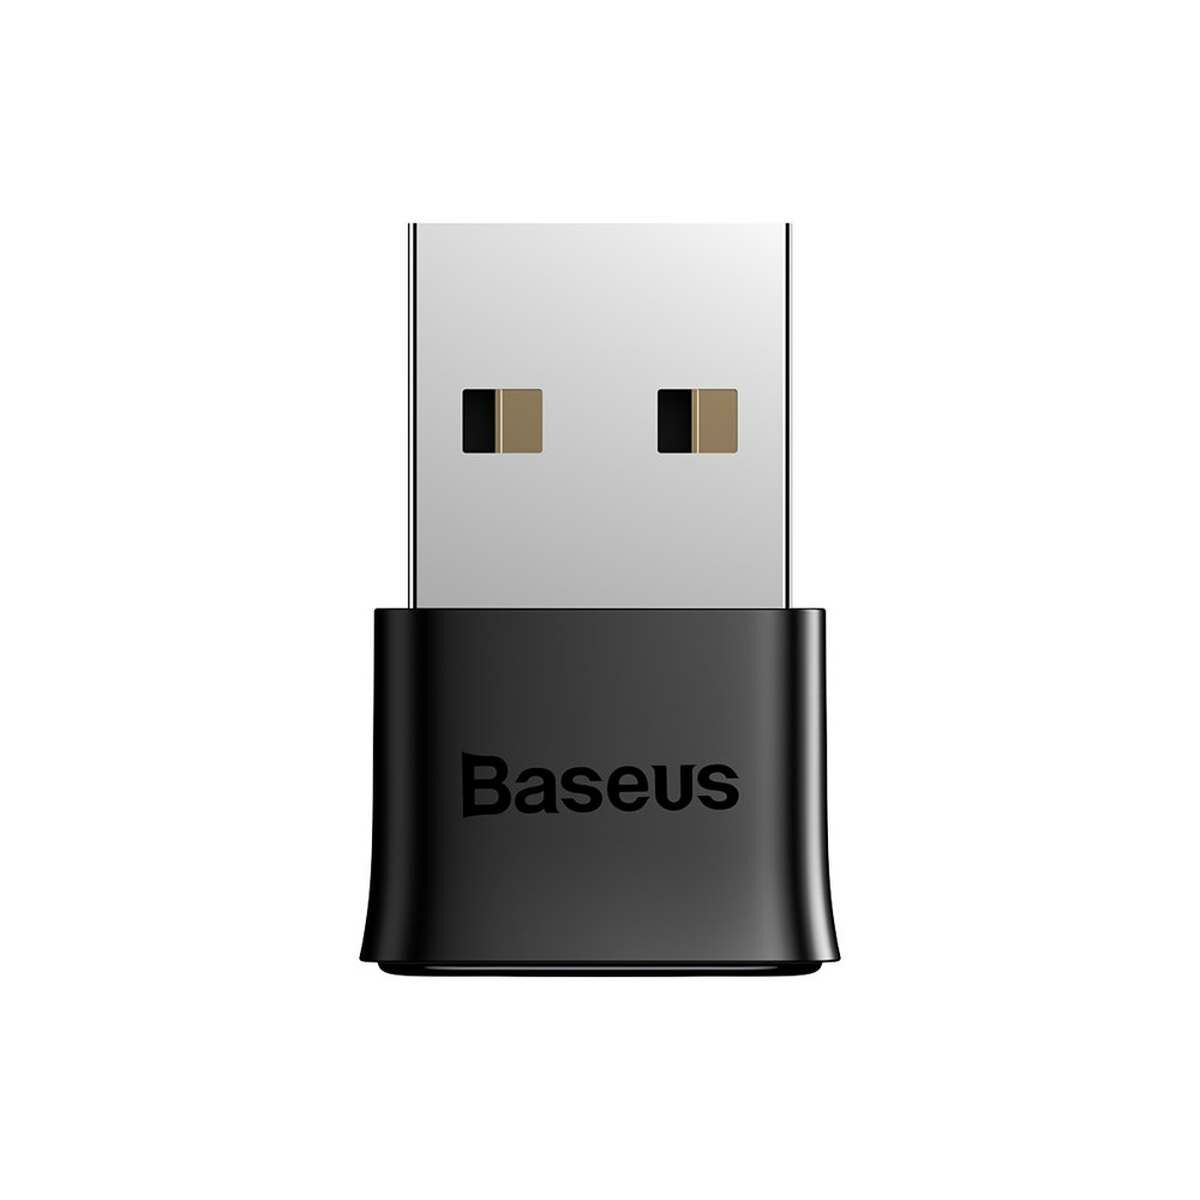 Kép 6/20 - Baseus HUB BA04 mini Bluetooth 5.0 adapter USB számítógépes vevőegység és transmitter, fekete (ZJBA000001)